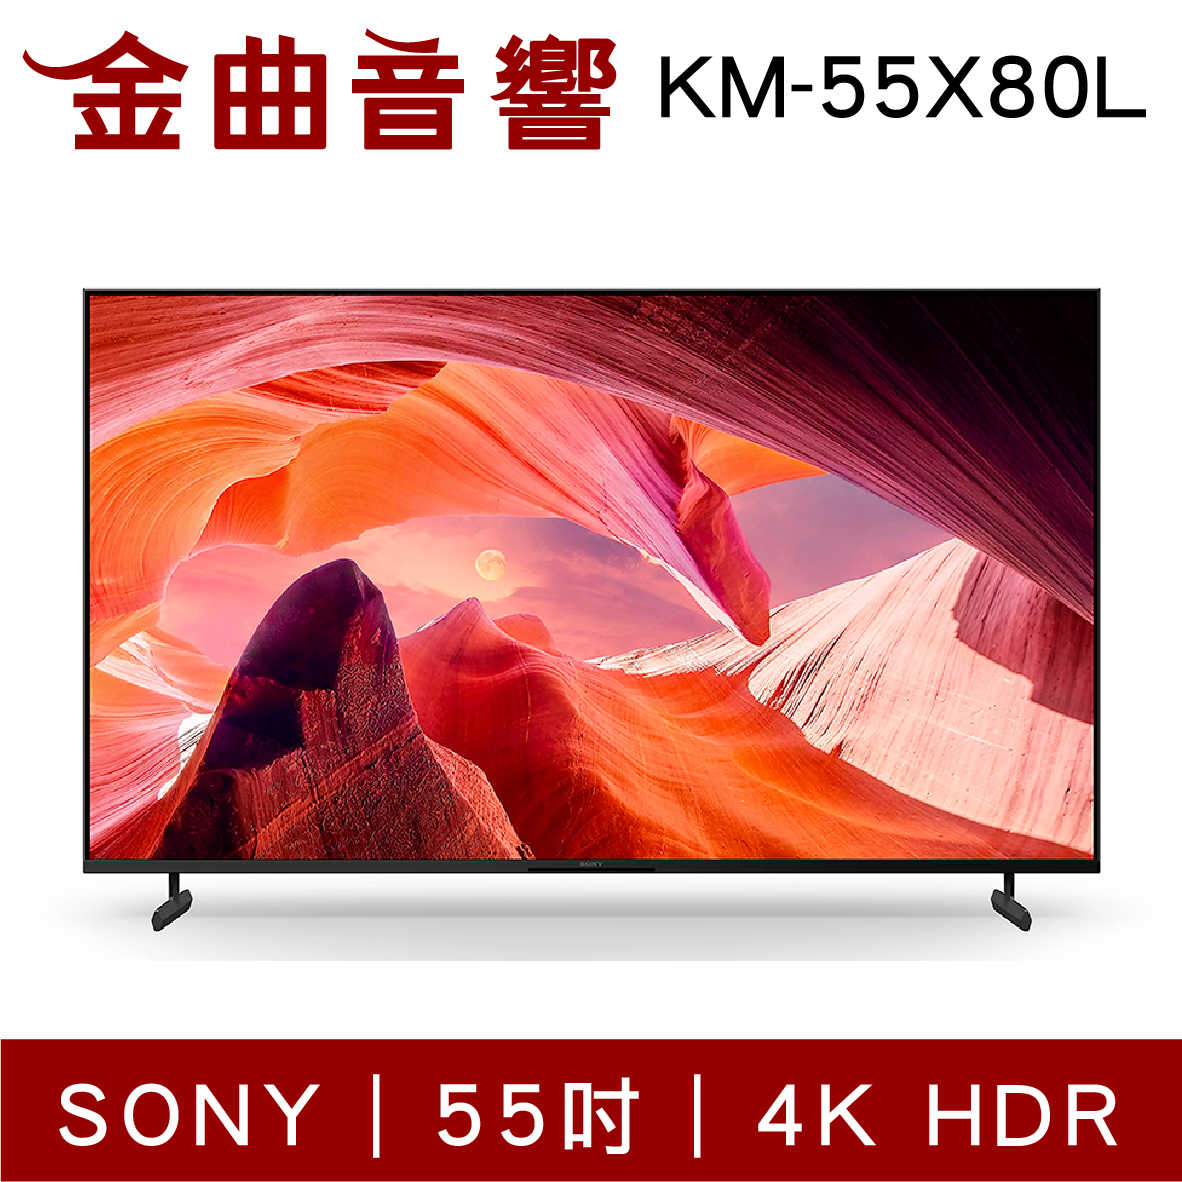 SONY 索尼 KM-55X80L 55吋 4K HDR LCD Google TV 電視 2023 | 金曲音響